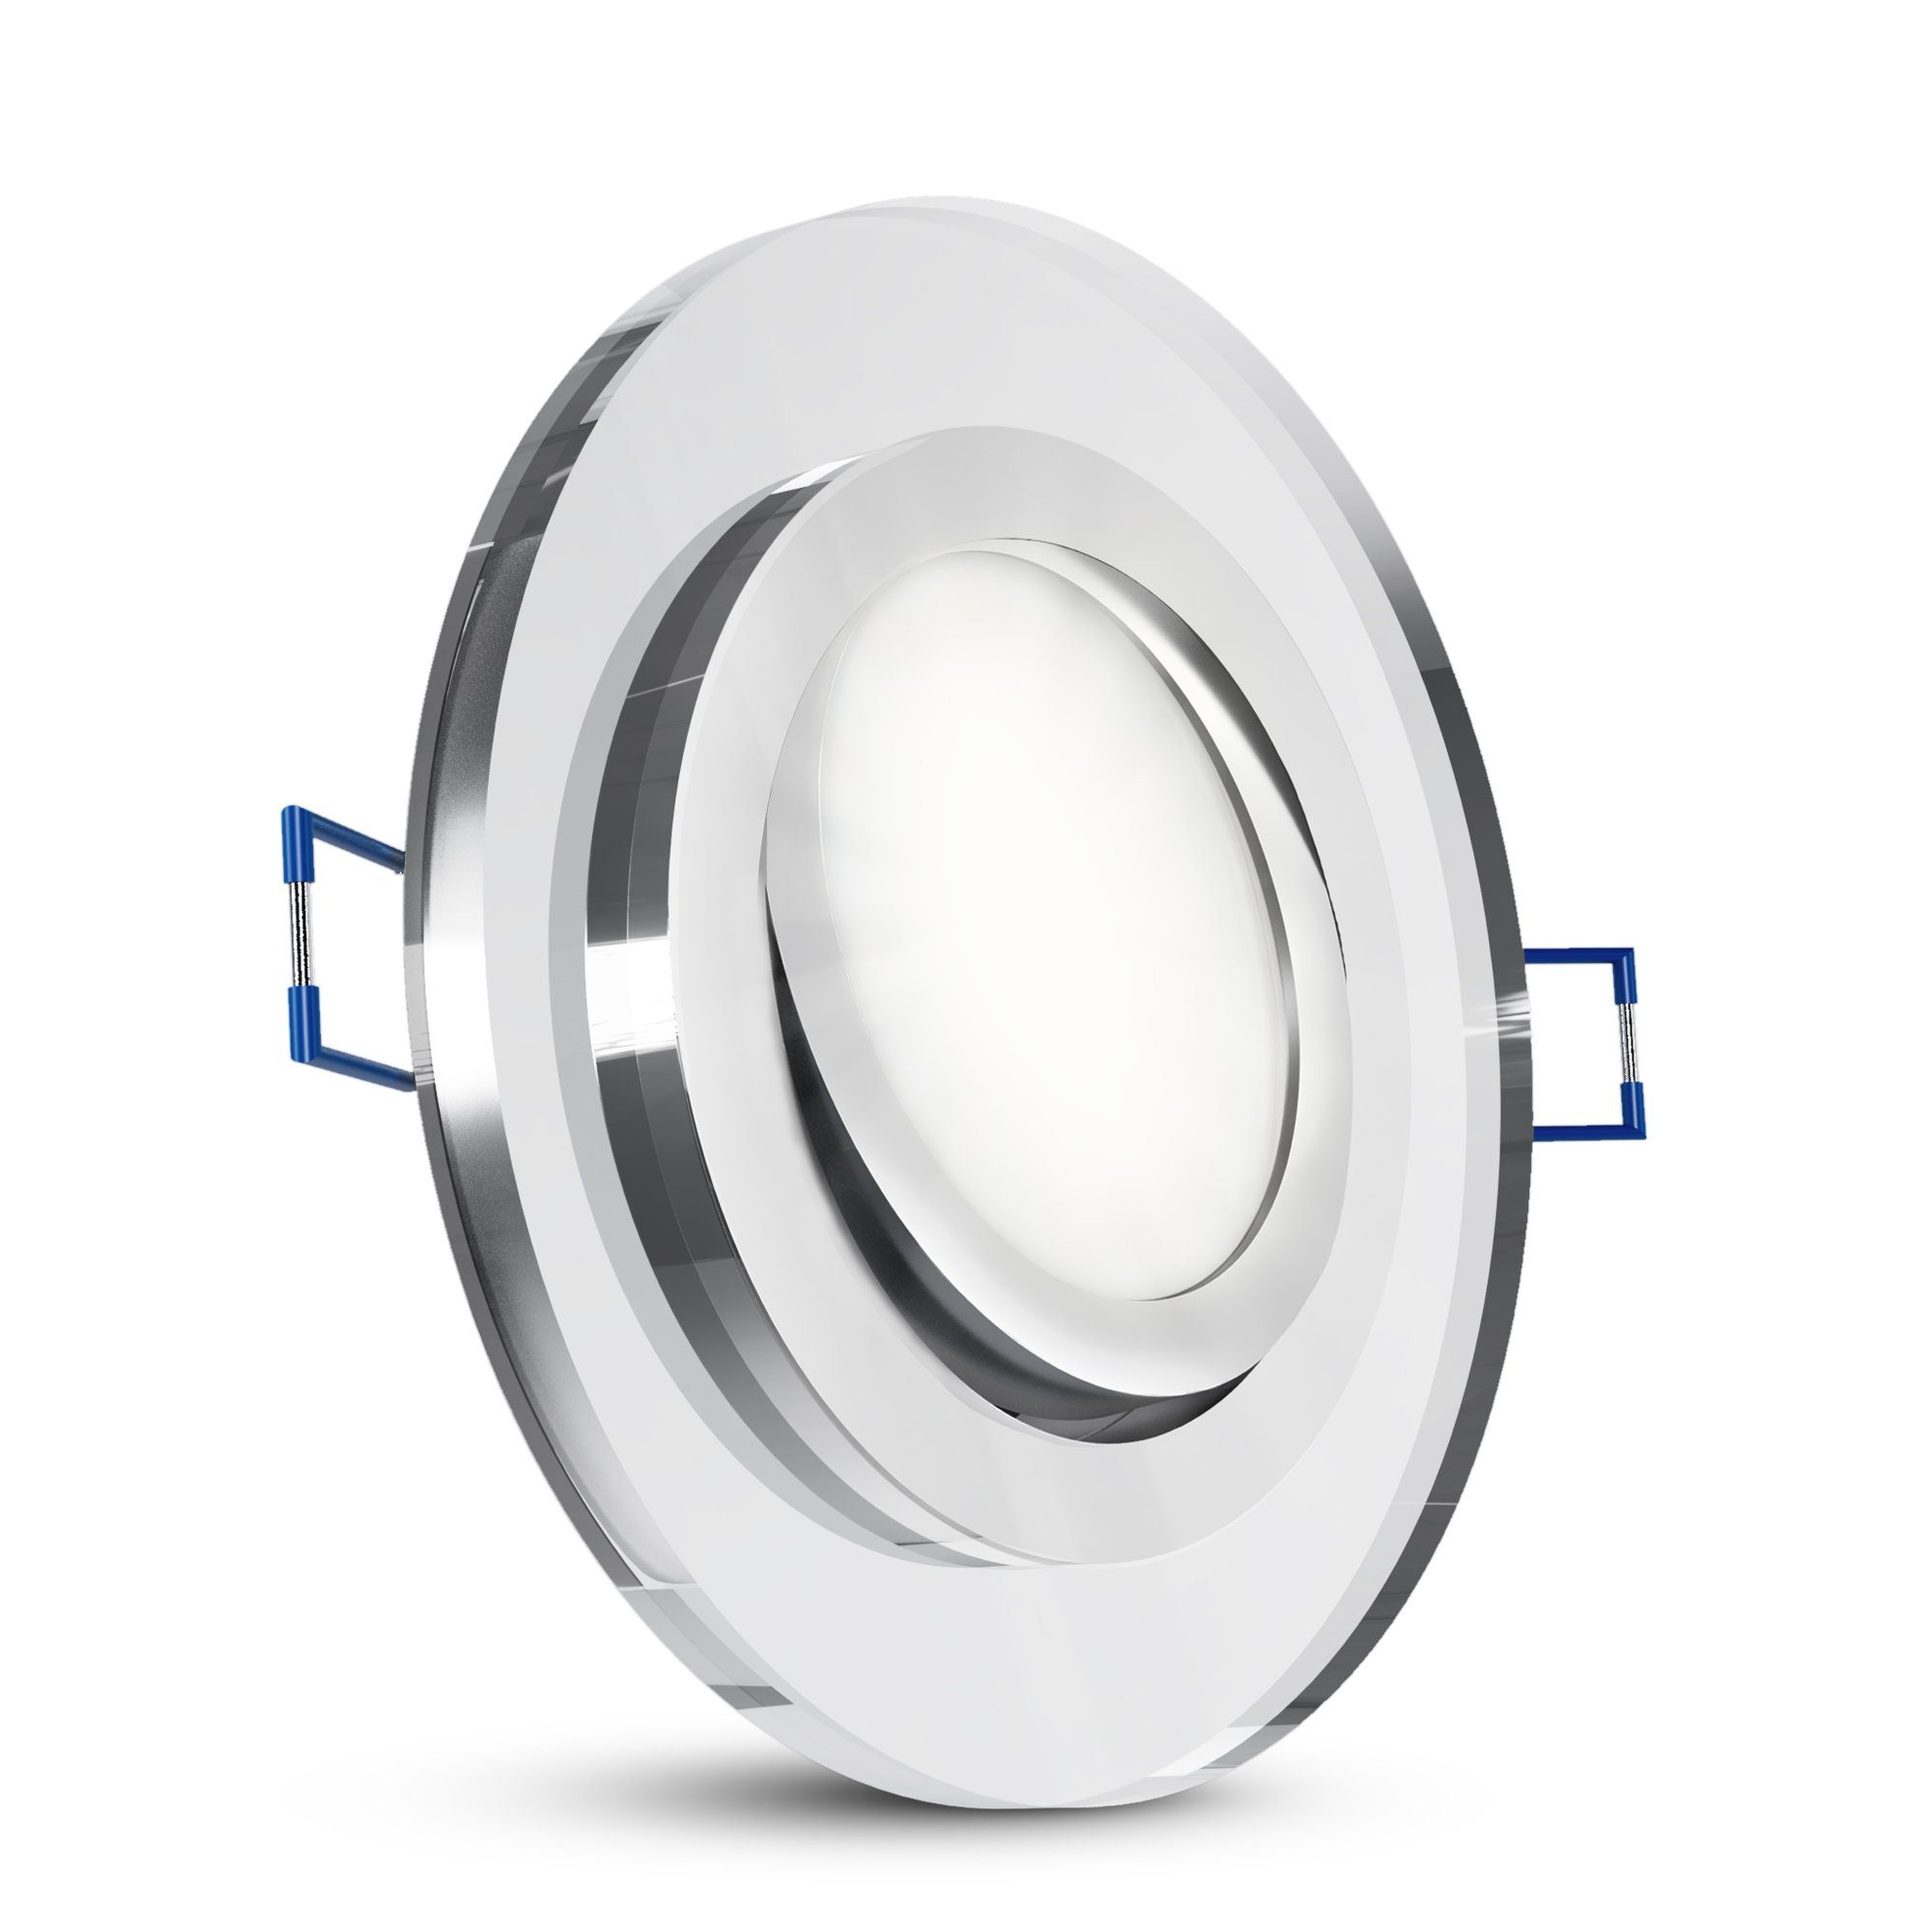 SSC-LUXon LED Einbaustrahler Flache Glas LED Einbaulampe schwenkbar rund dimmbar mit LED Modul, Neutralweiß